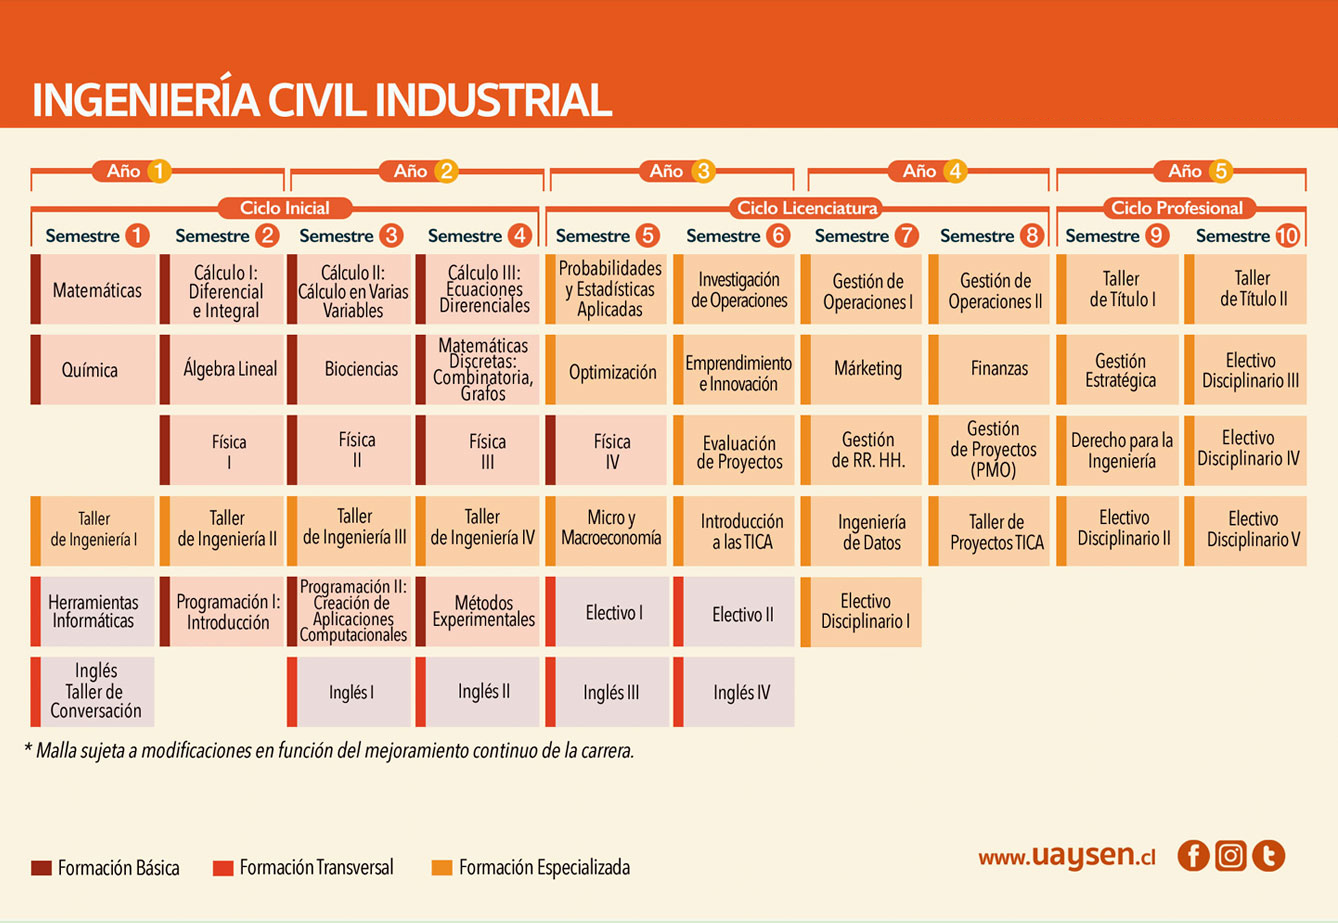 Ingeniería Civil Industrial - malla y requisitos